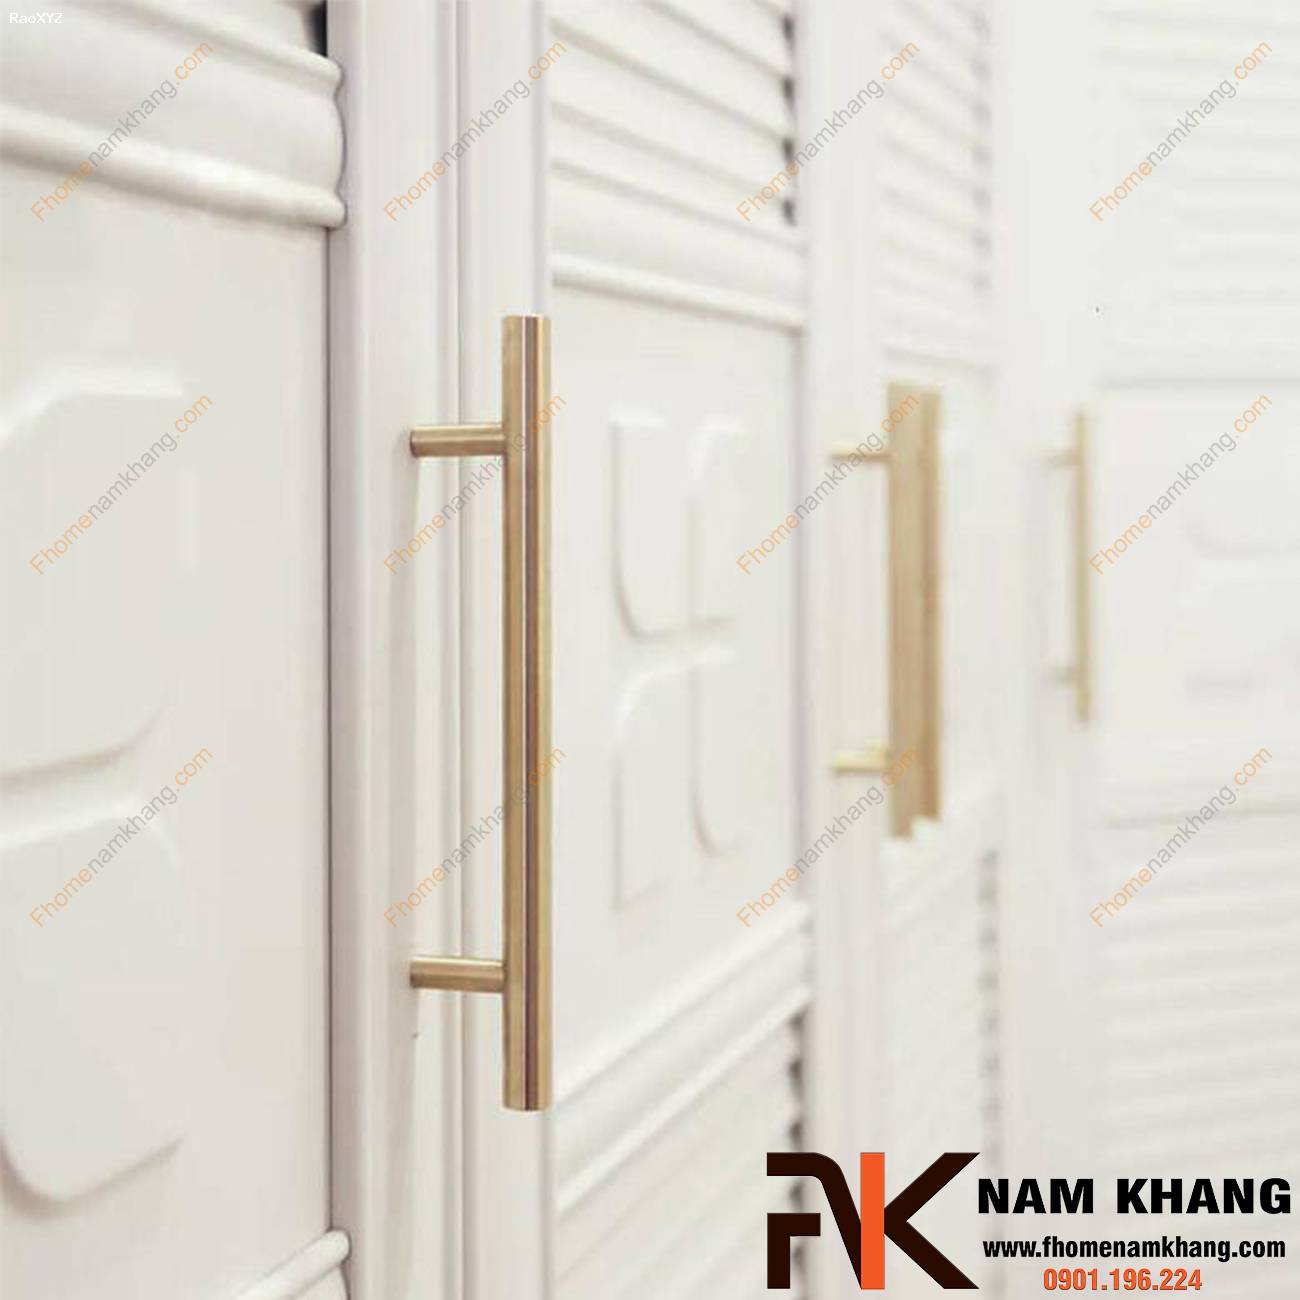 Tay nắm tủ cao cấp dạng thanh tròn NK238 | F-Home NamKhang